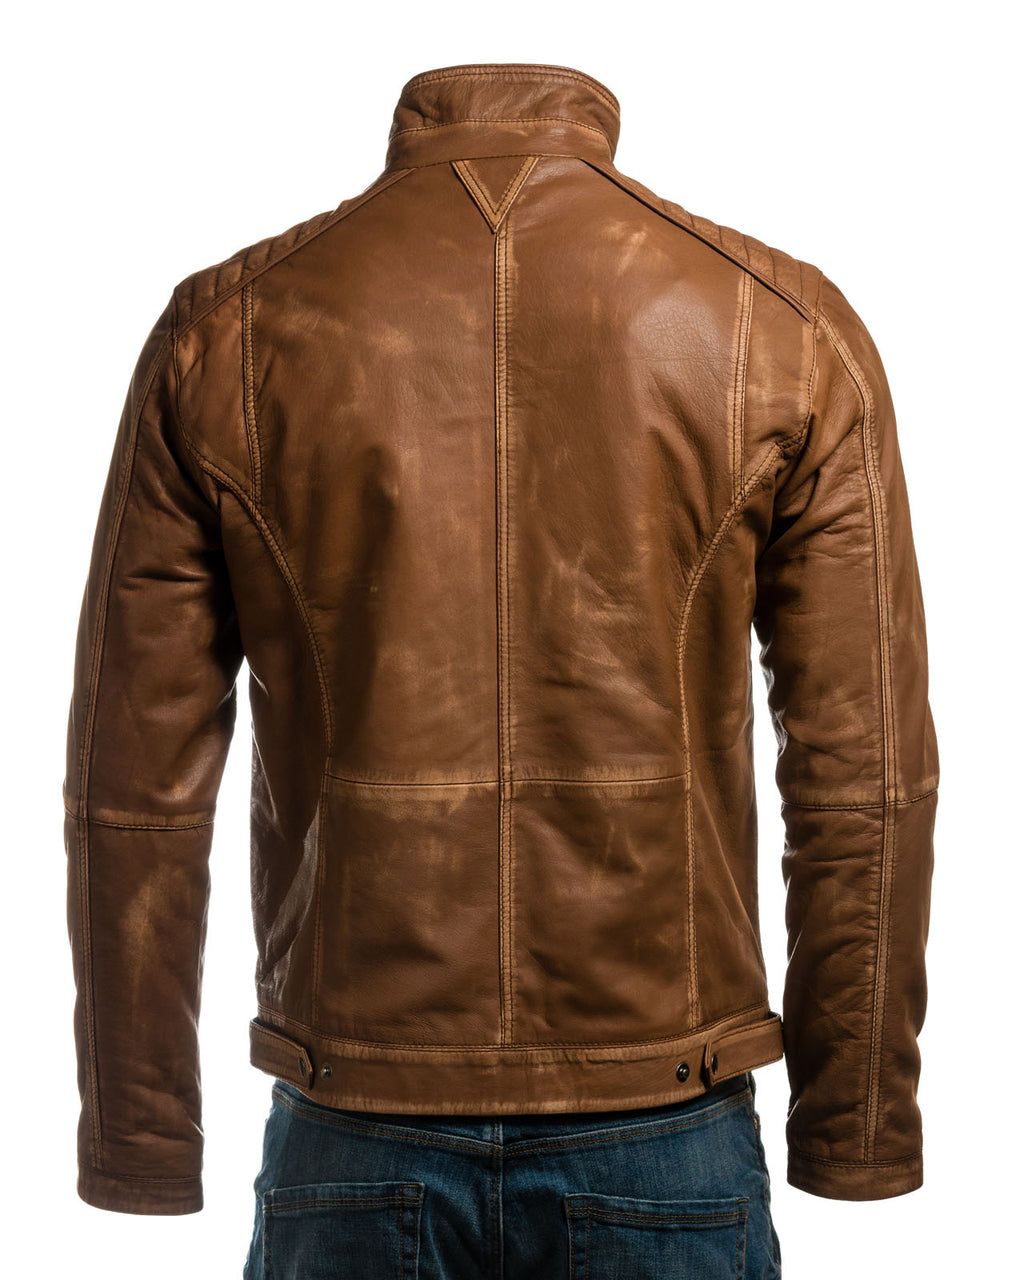 Men's Antique Tan Vintage Biker Style Leather Jacket - Dominico